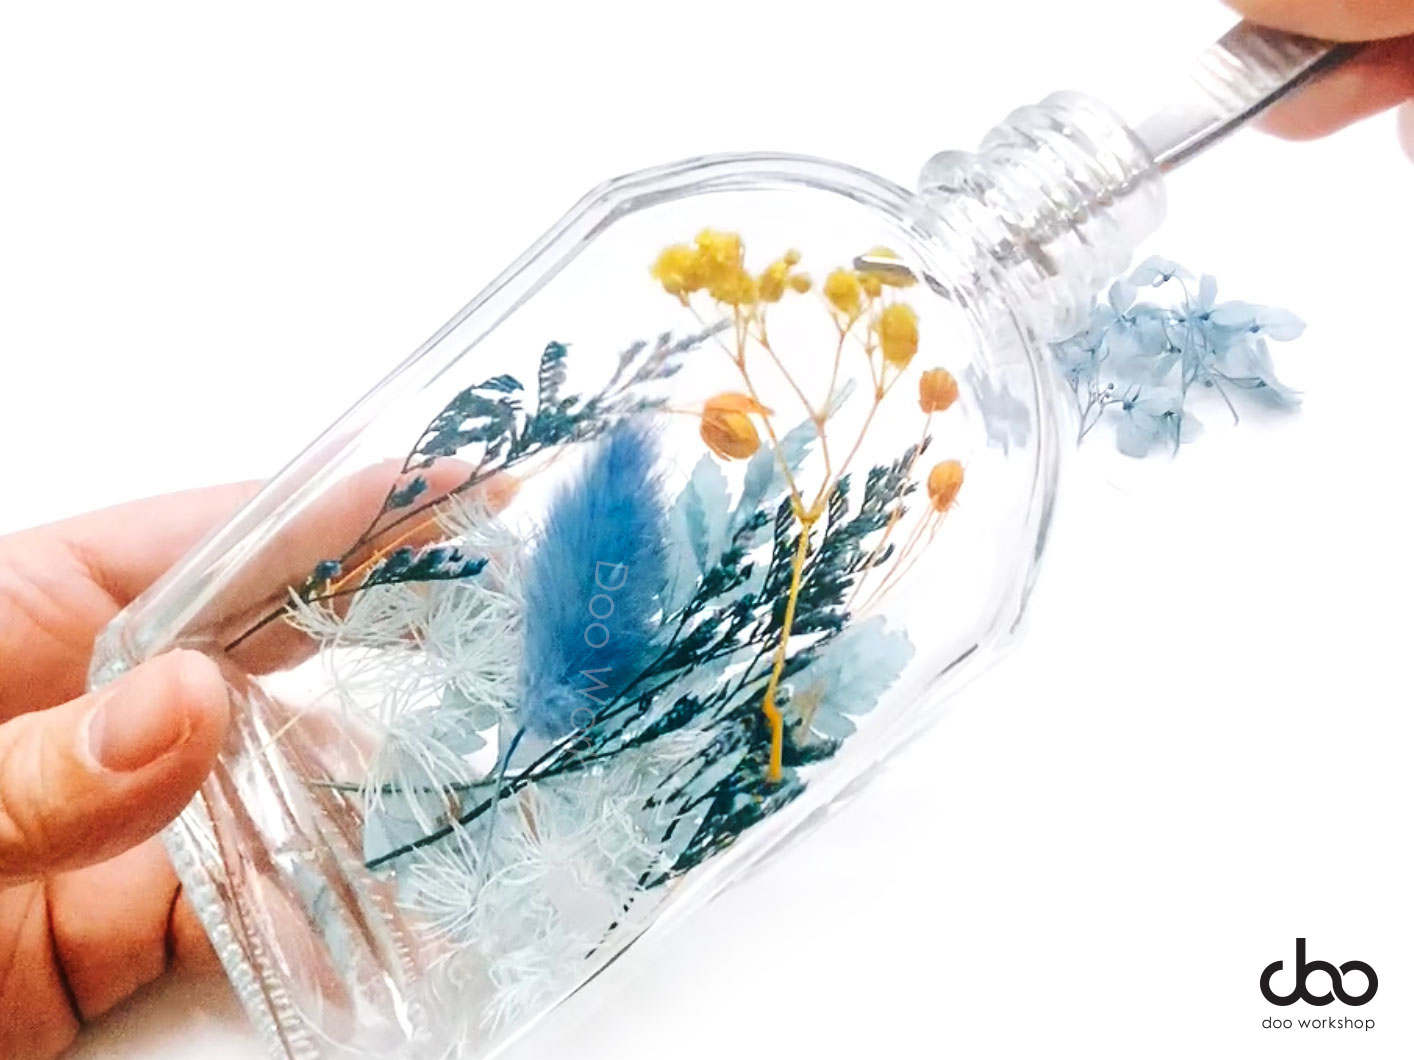 設計一瓶自已的浮游花瓶